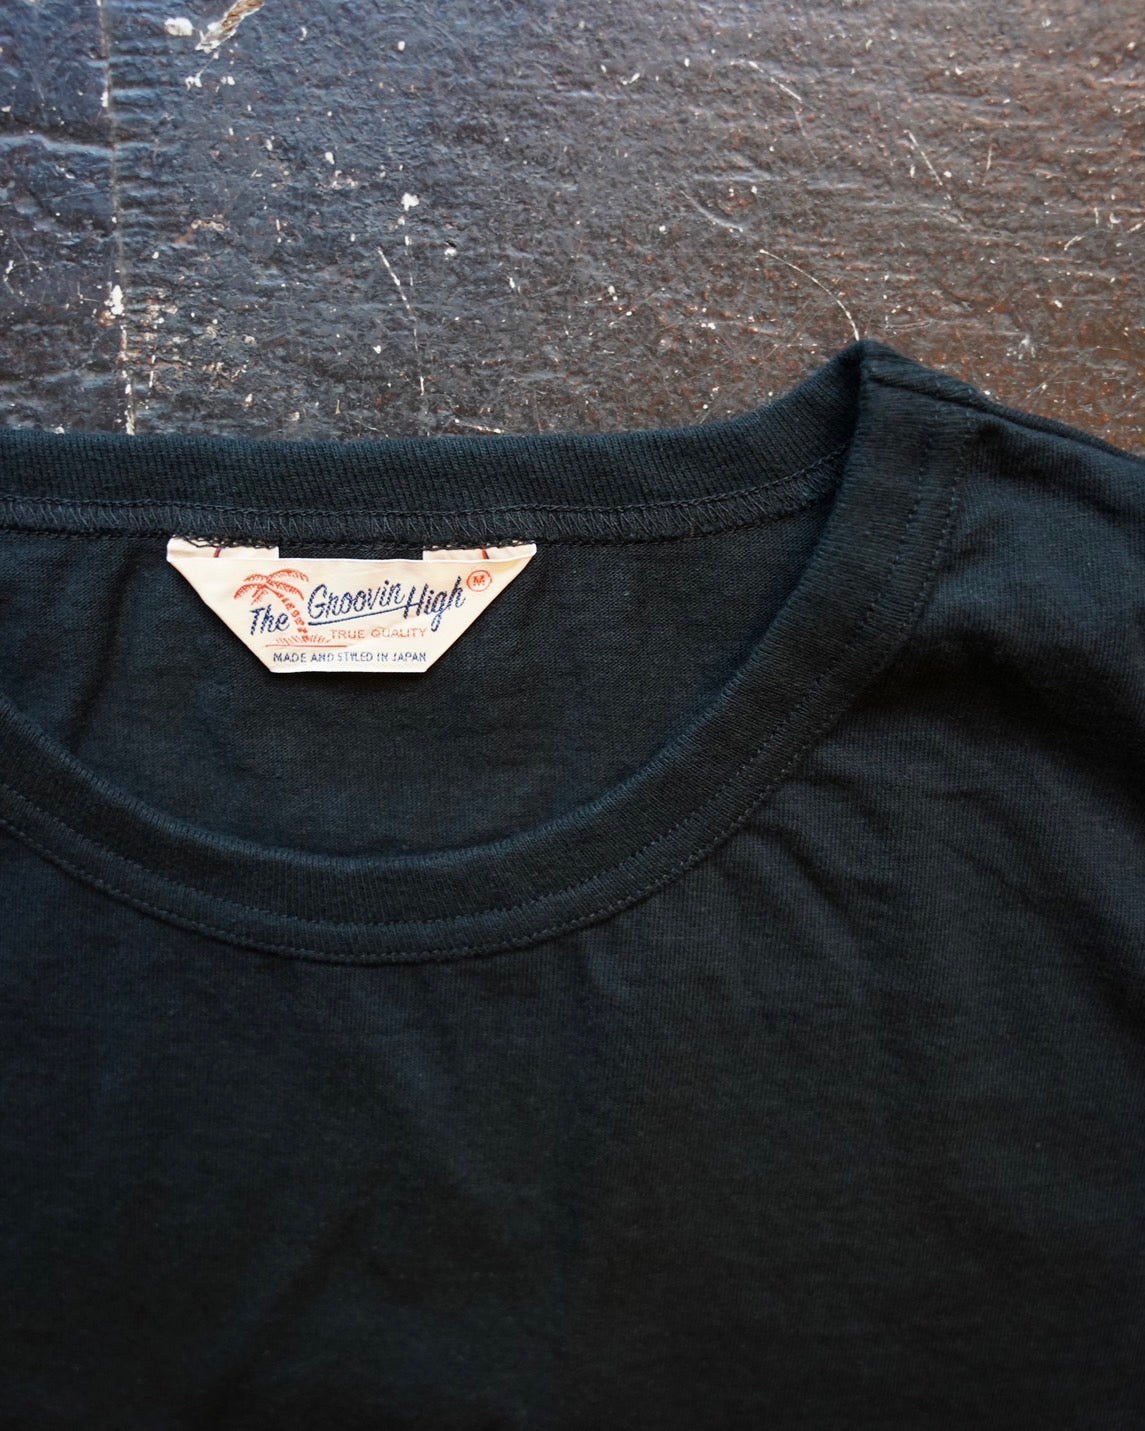 #522 1950s Cotton T-shirt / Black